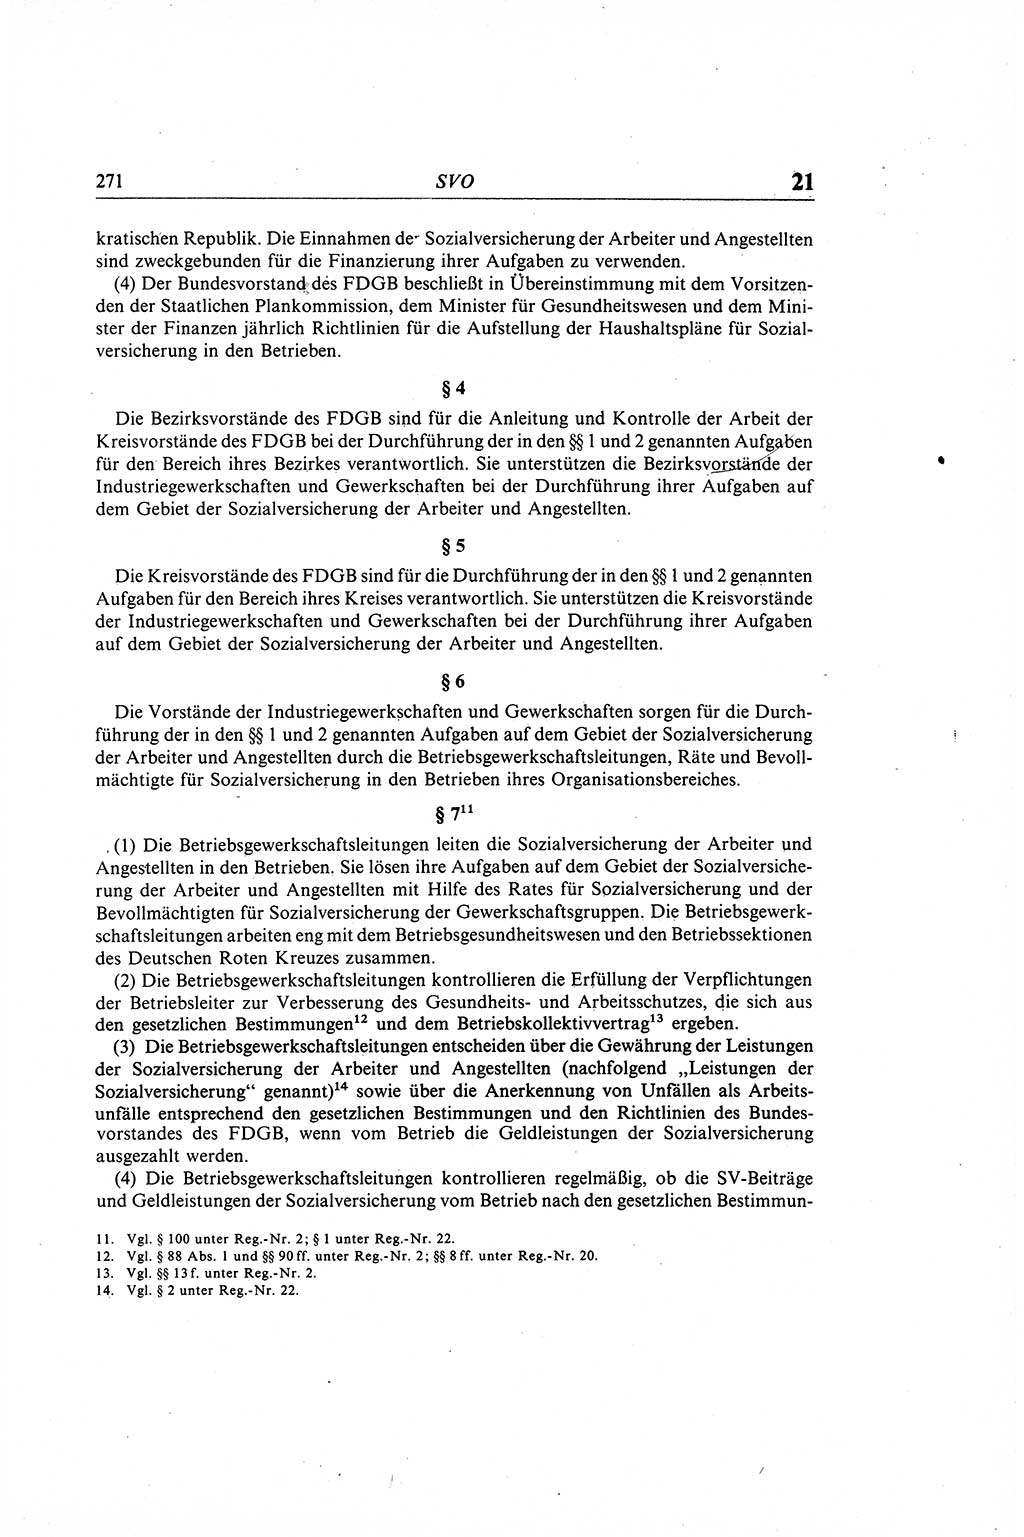 Gesetzbuch der Arbeit (GBA) und andere ausgewählte rechtliche Bestimmungen [Deutsche Demokratische Republik (DDR)] 1968, Seite 271 (GBA DDR 1968, S. 271)